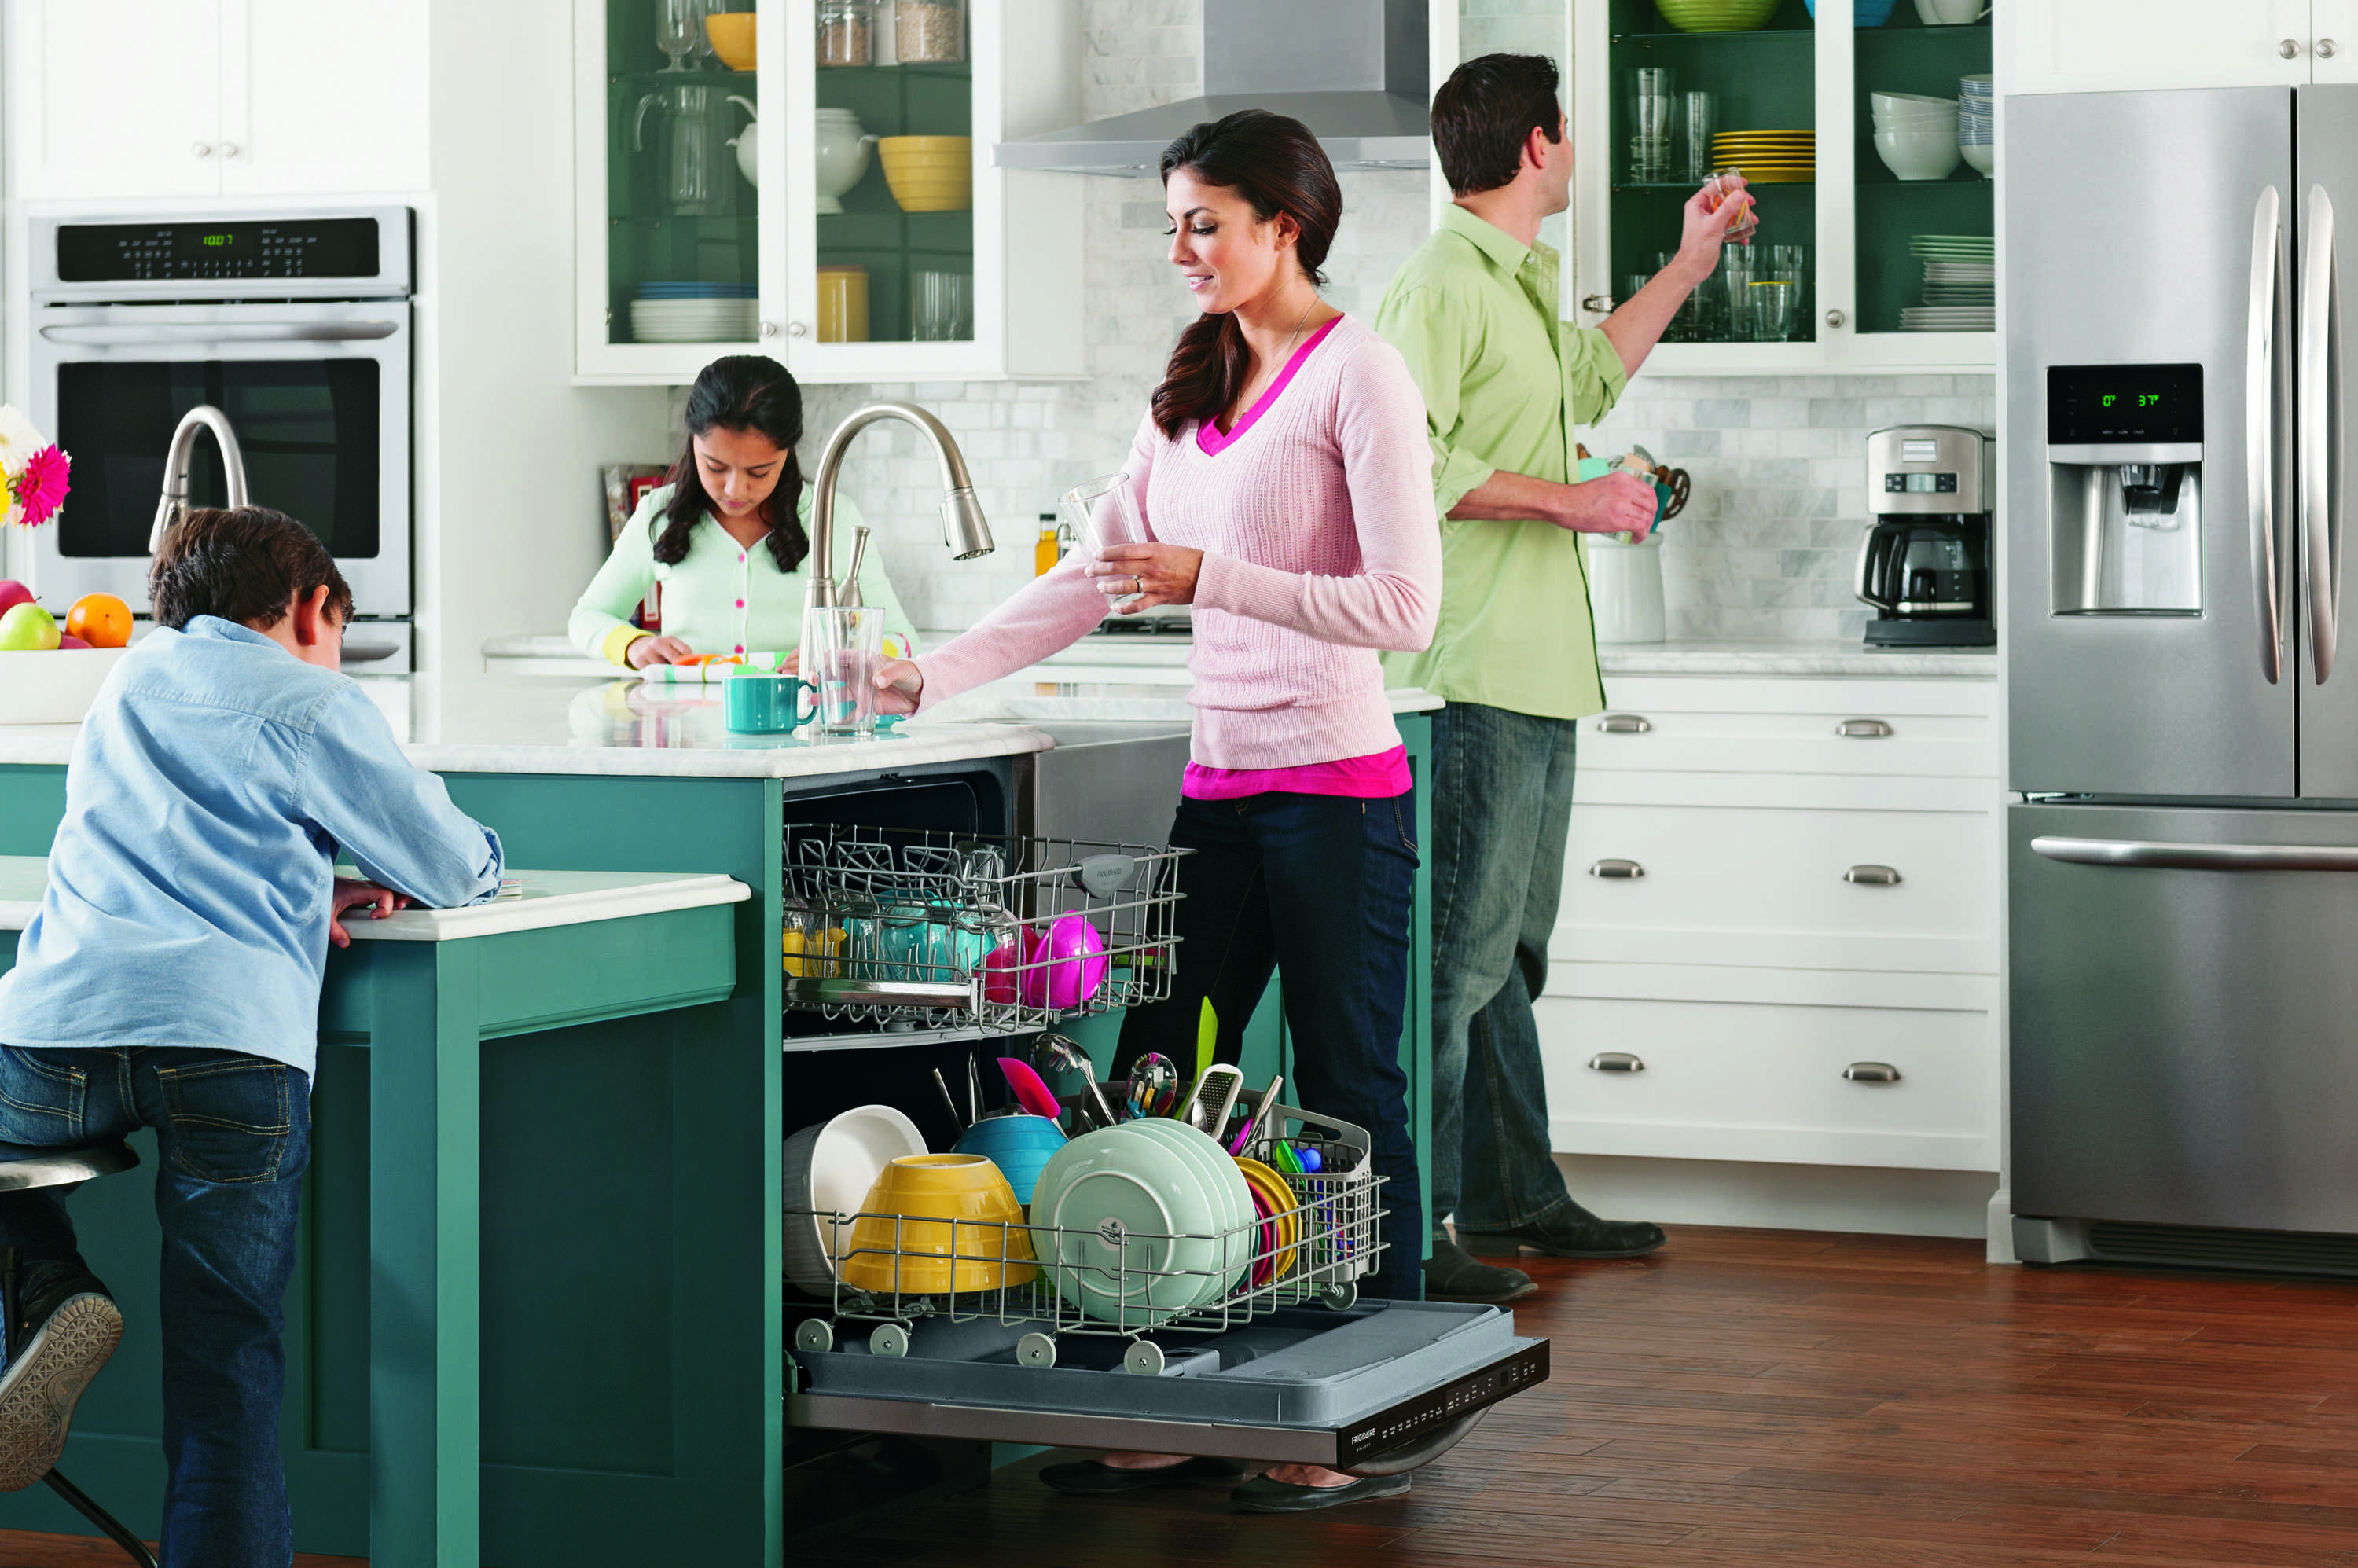 Кухонные электроприборы сильно облегчают жизнь хозяйкам на кухне Какие-то приборы, как например холодильник и плита есть у всех, а остальную технику люди приобретают исходя из собственных потребностей